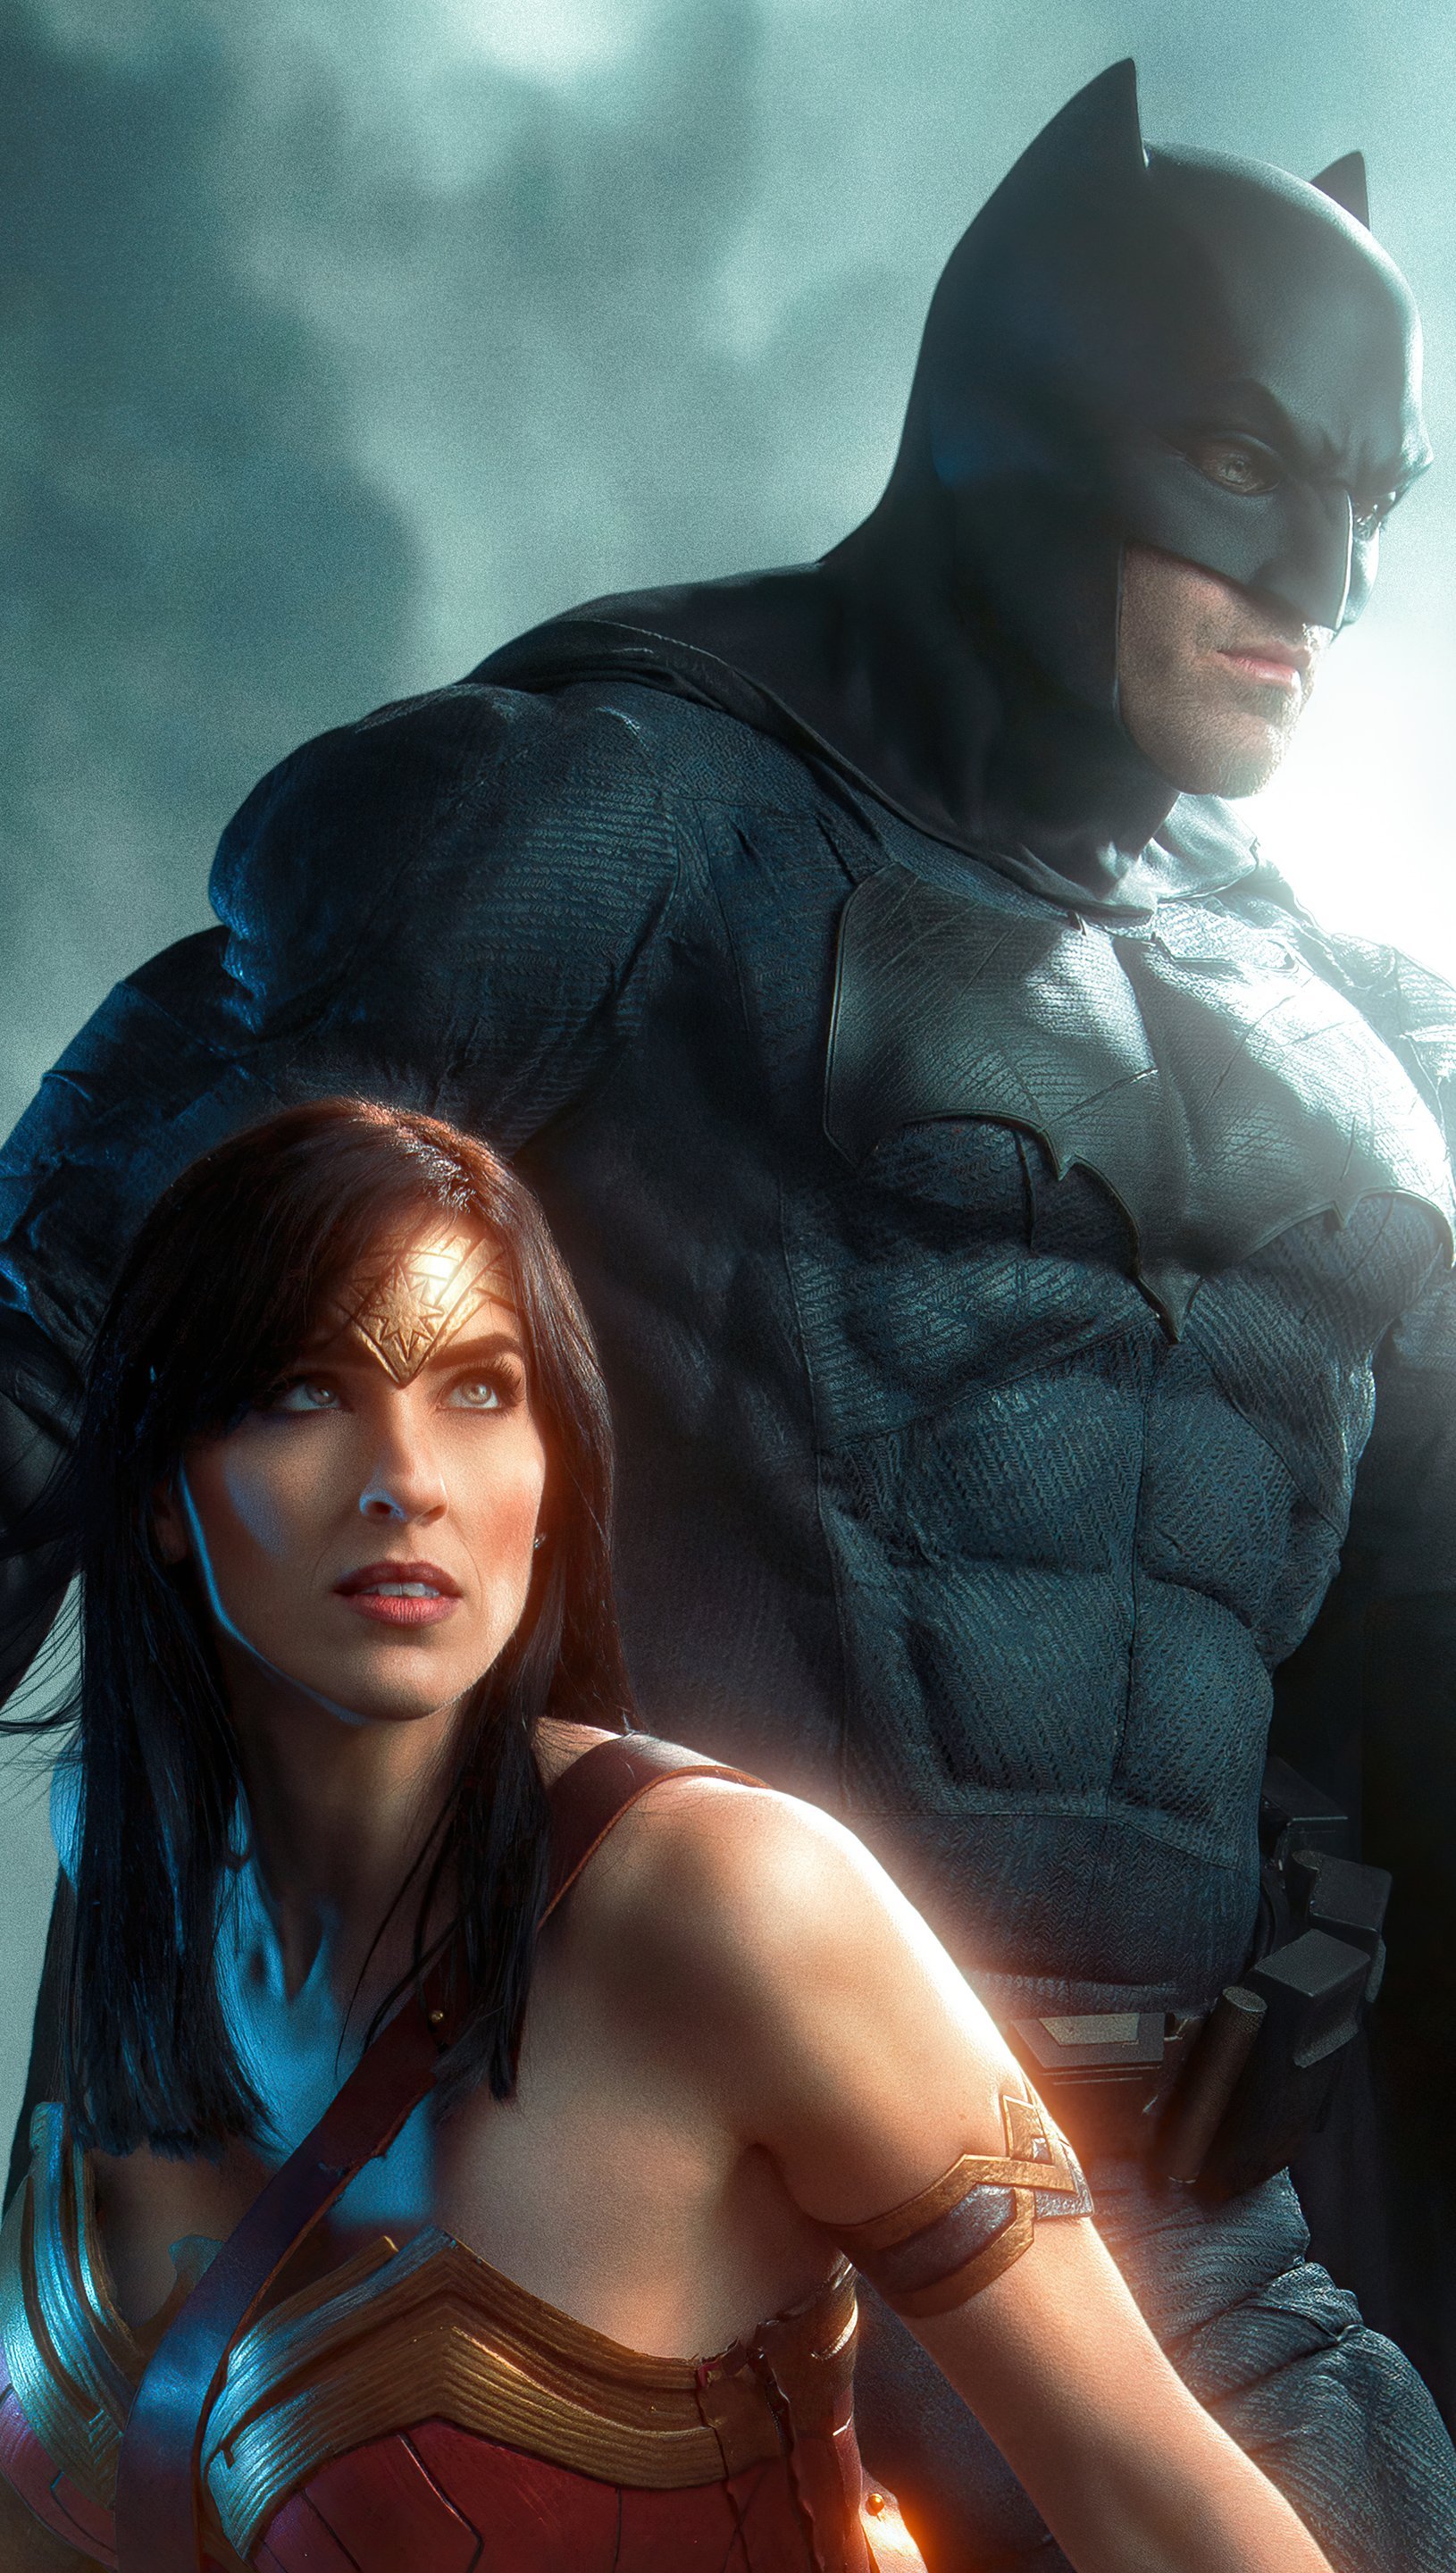 Fondos de pantalla Batman y La mujer maravilla Fanart Vertical